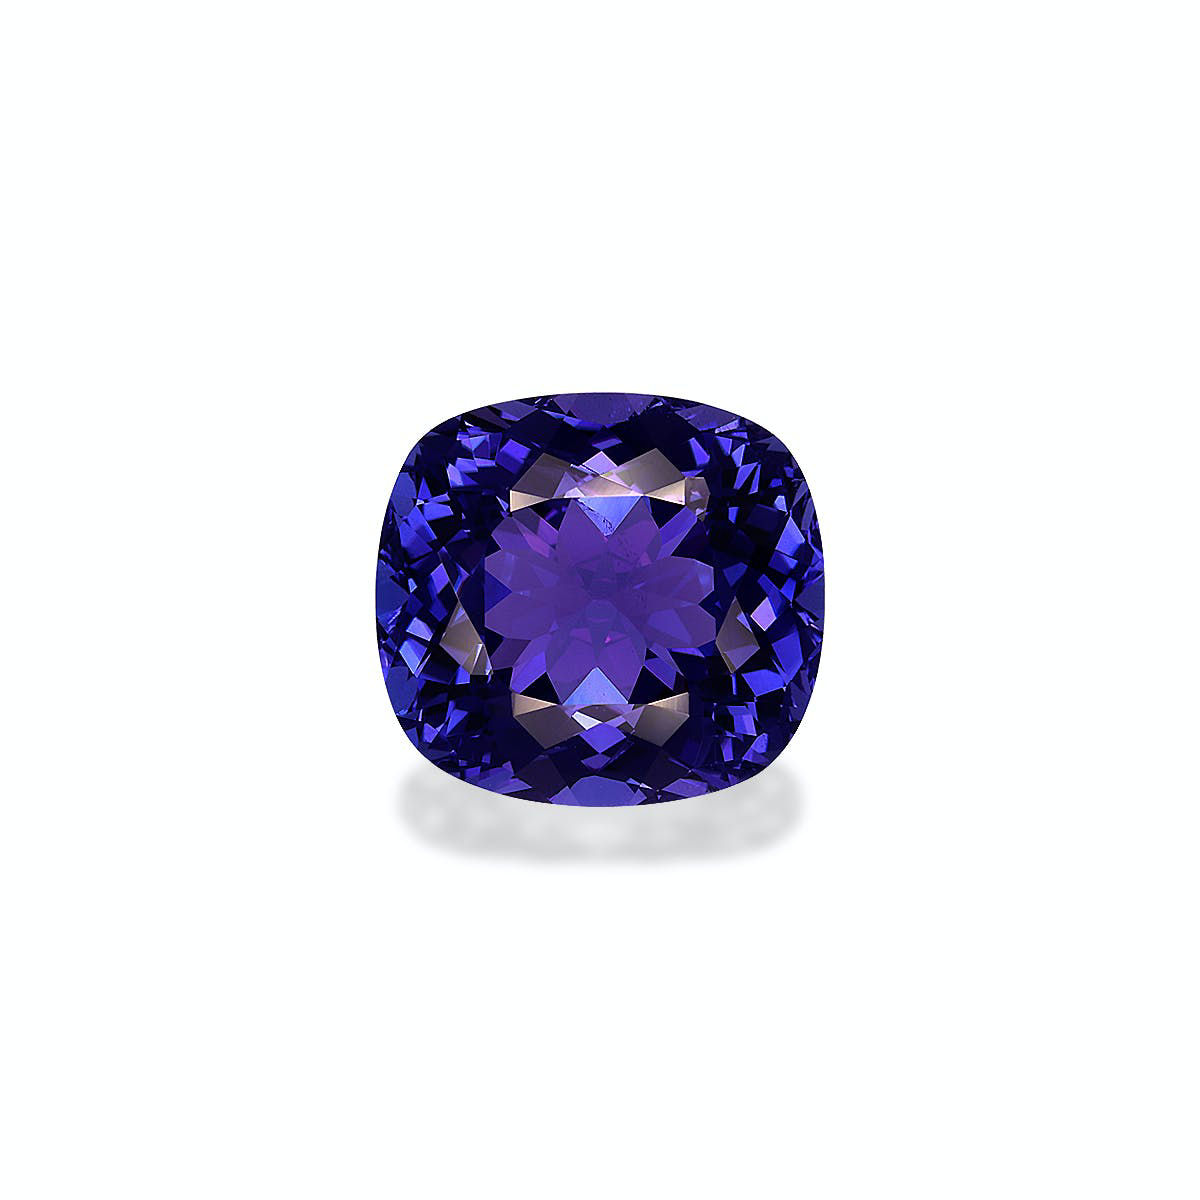 D-Block Violet Blue Tanzanite 11.25ct (TN0792)